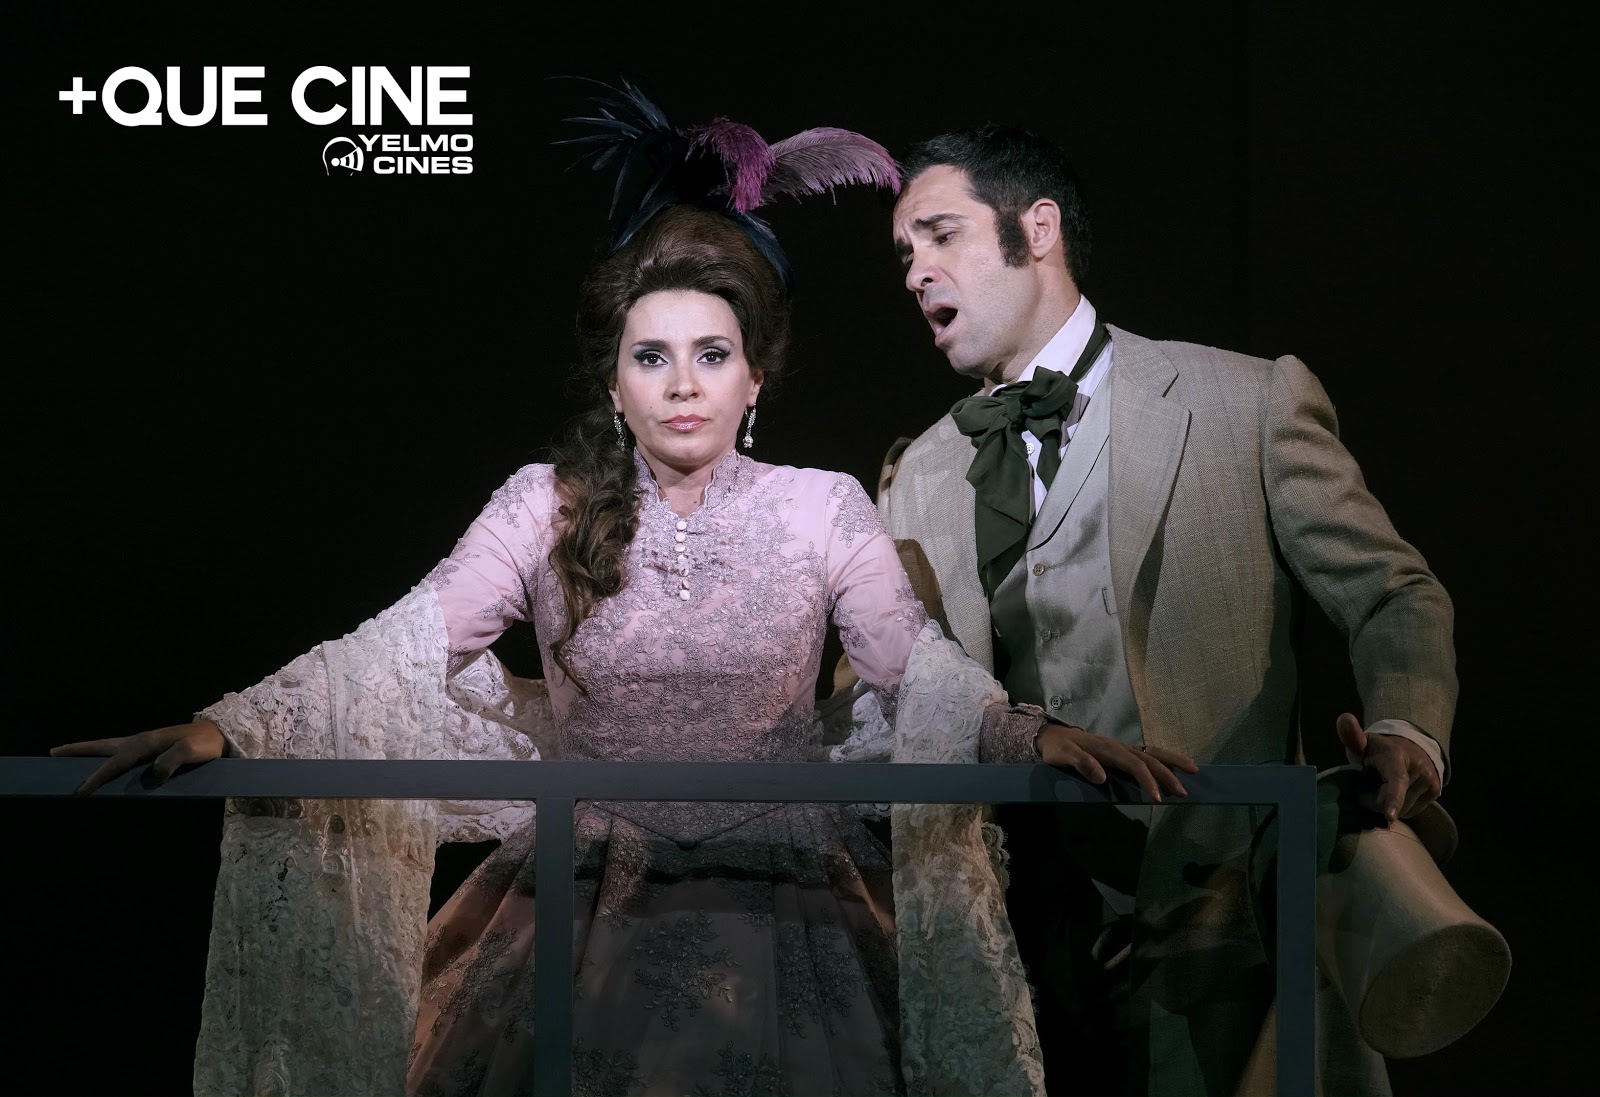 Yelmo Cines proyecta las óperas Doña Francisquita y Aida del Gran Teatre del Liceu a través de +Que Cine, su ventana de contenidos alternativos